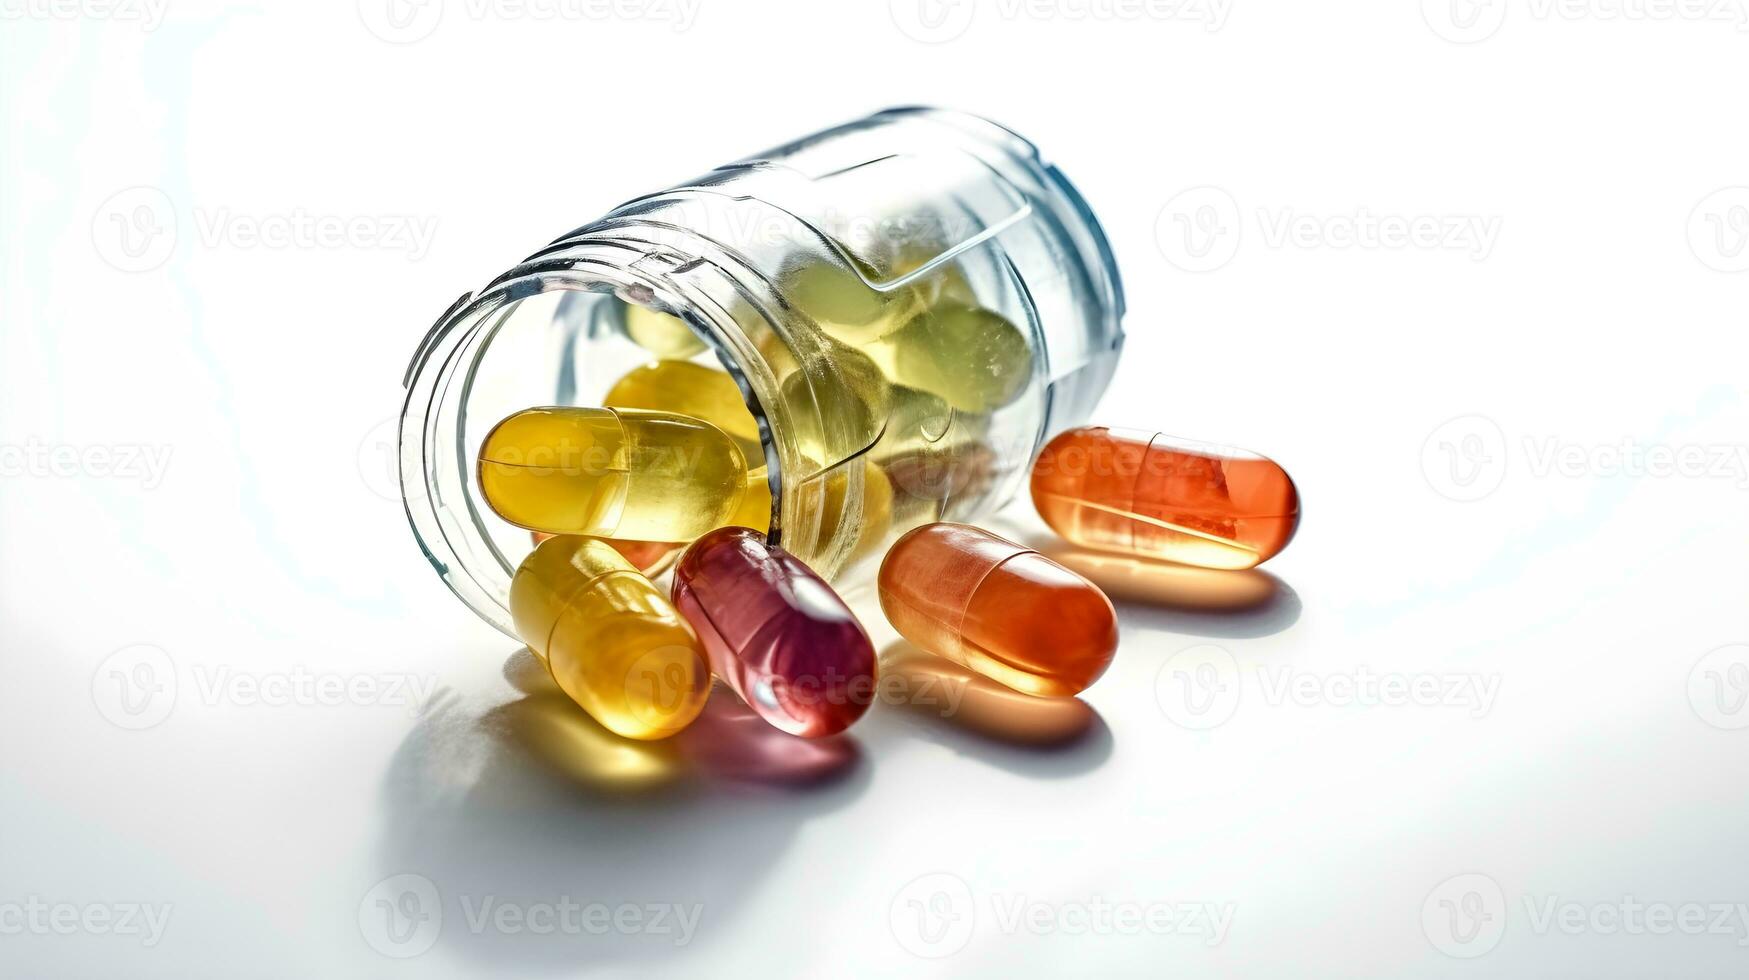 sortiment av farmaceutisk medicin vitaminer, biljard, softgel i en små behållare flaska isolerat på vit bakgrund studio skott. foto